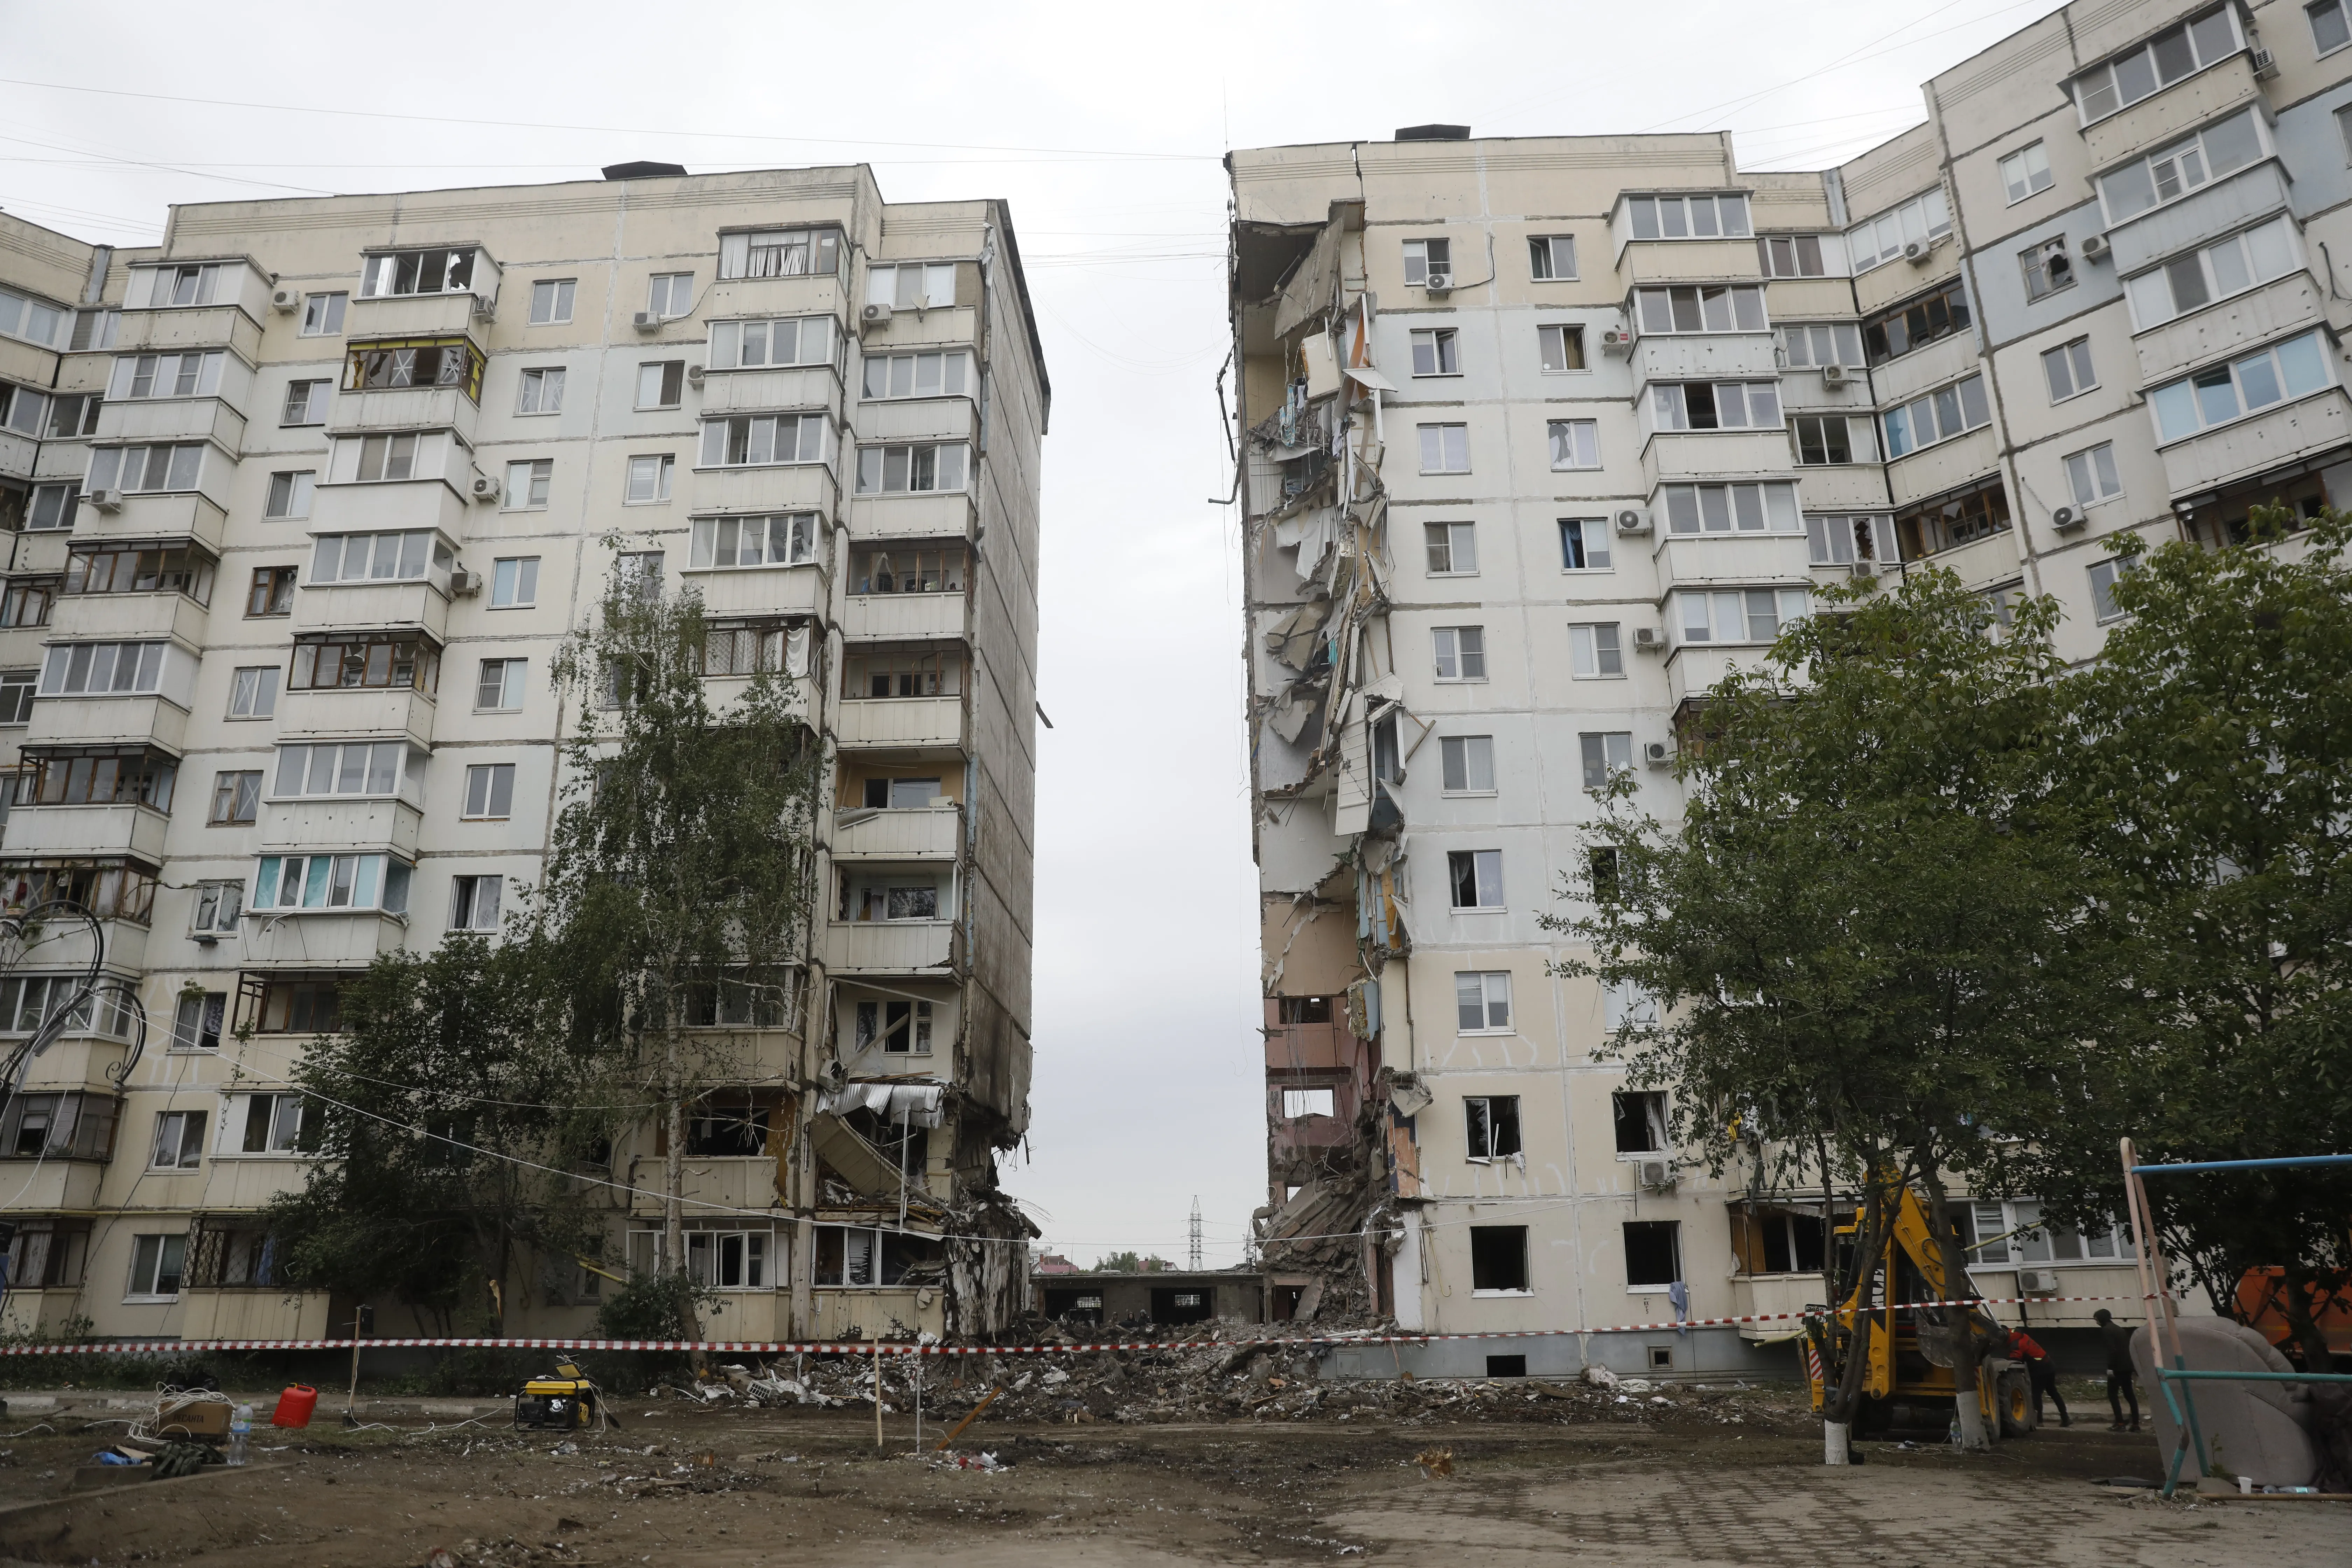 Мы помогали под воем сирен: Почему атаки киевского режима не смогут сломить белгородцев